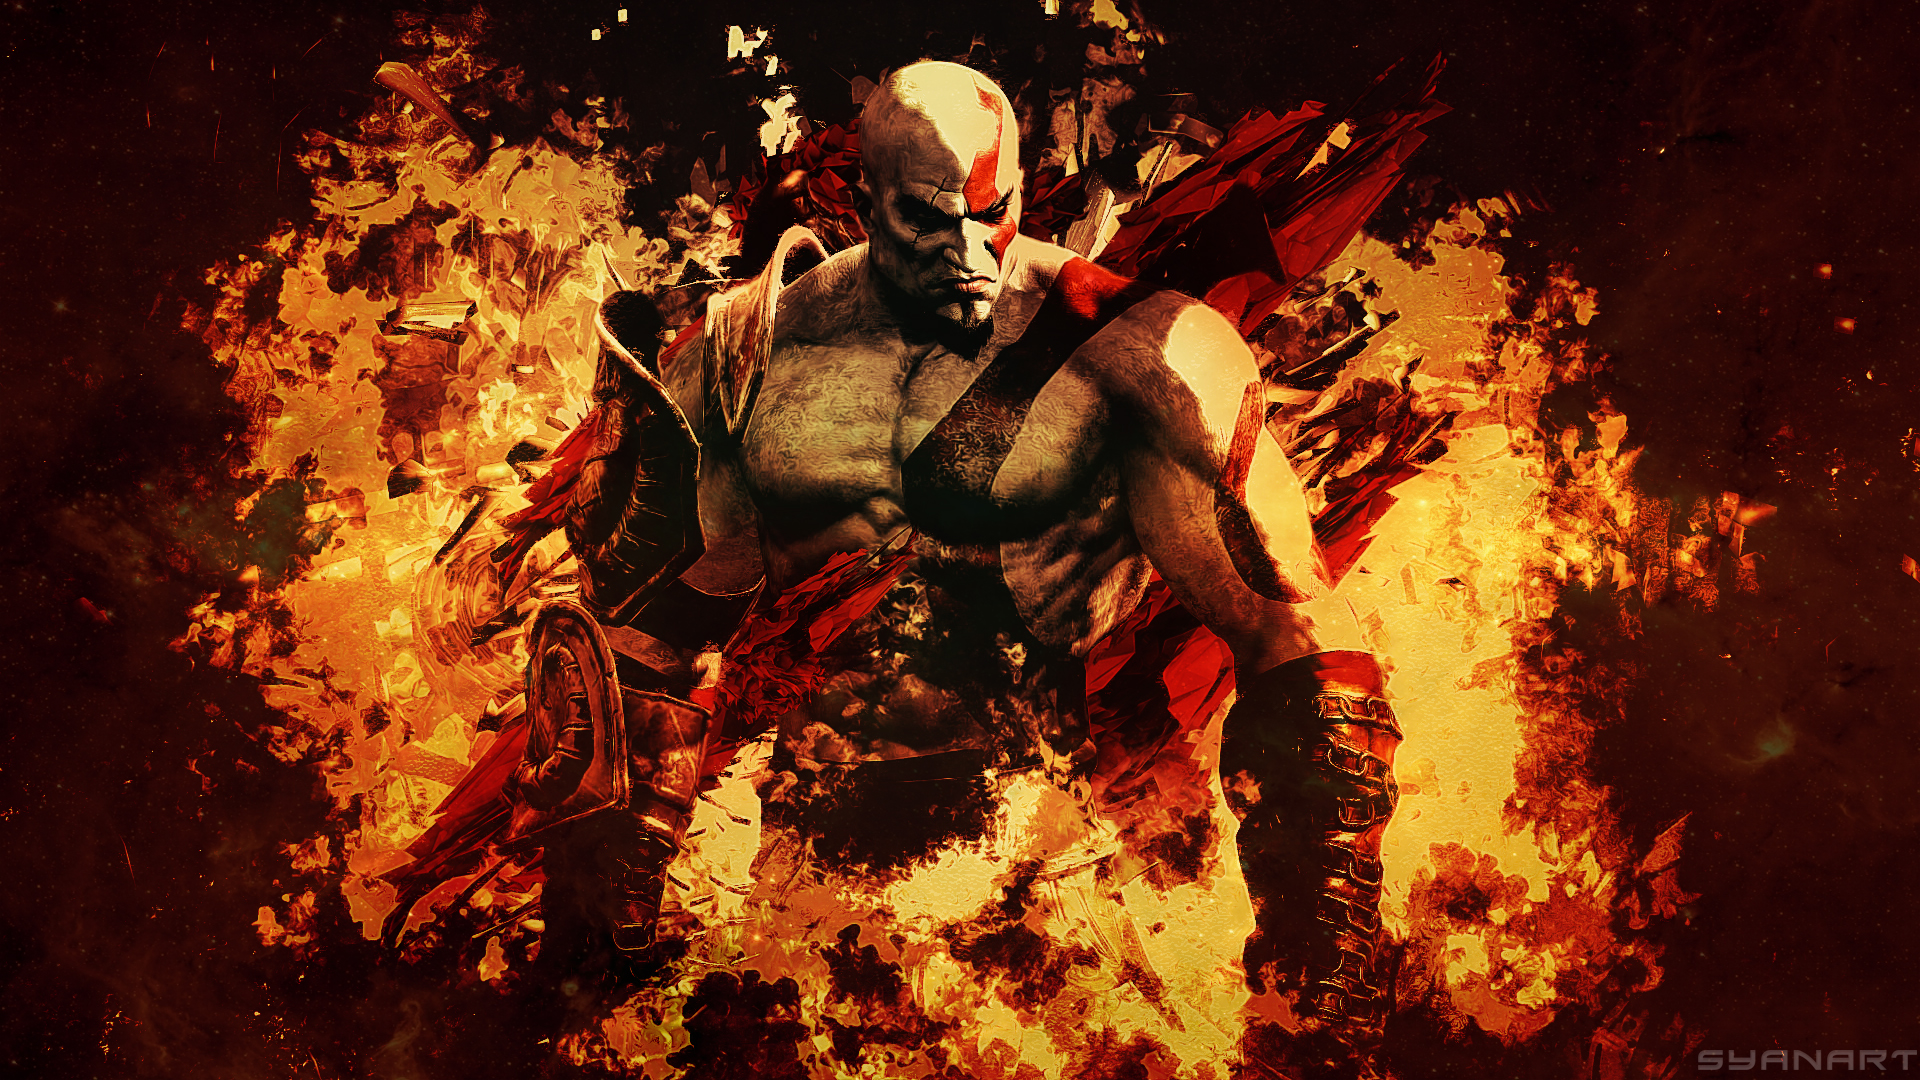 Download mobile wallpaper God Of War Iii, Kratos (God Of War), God Of War, Video Game for free.